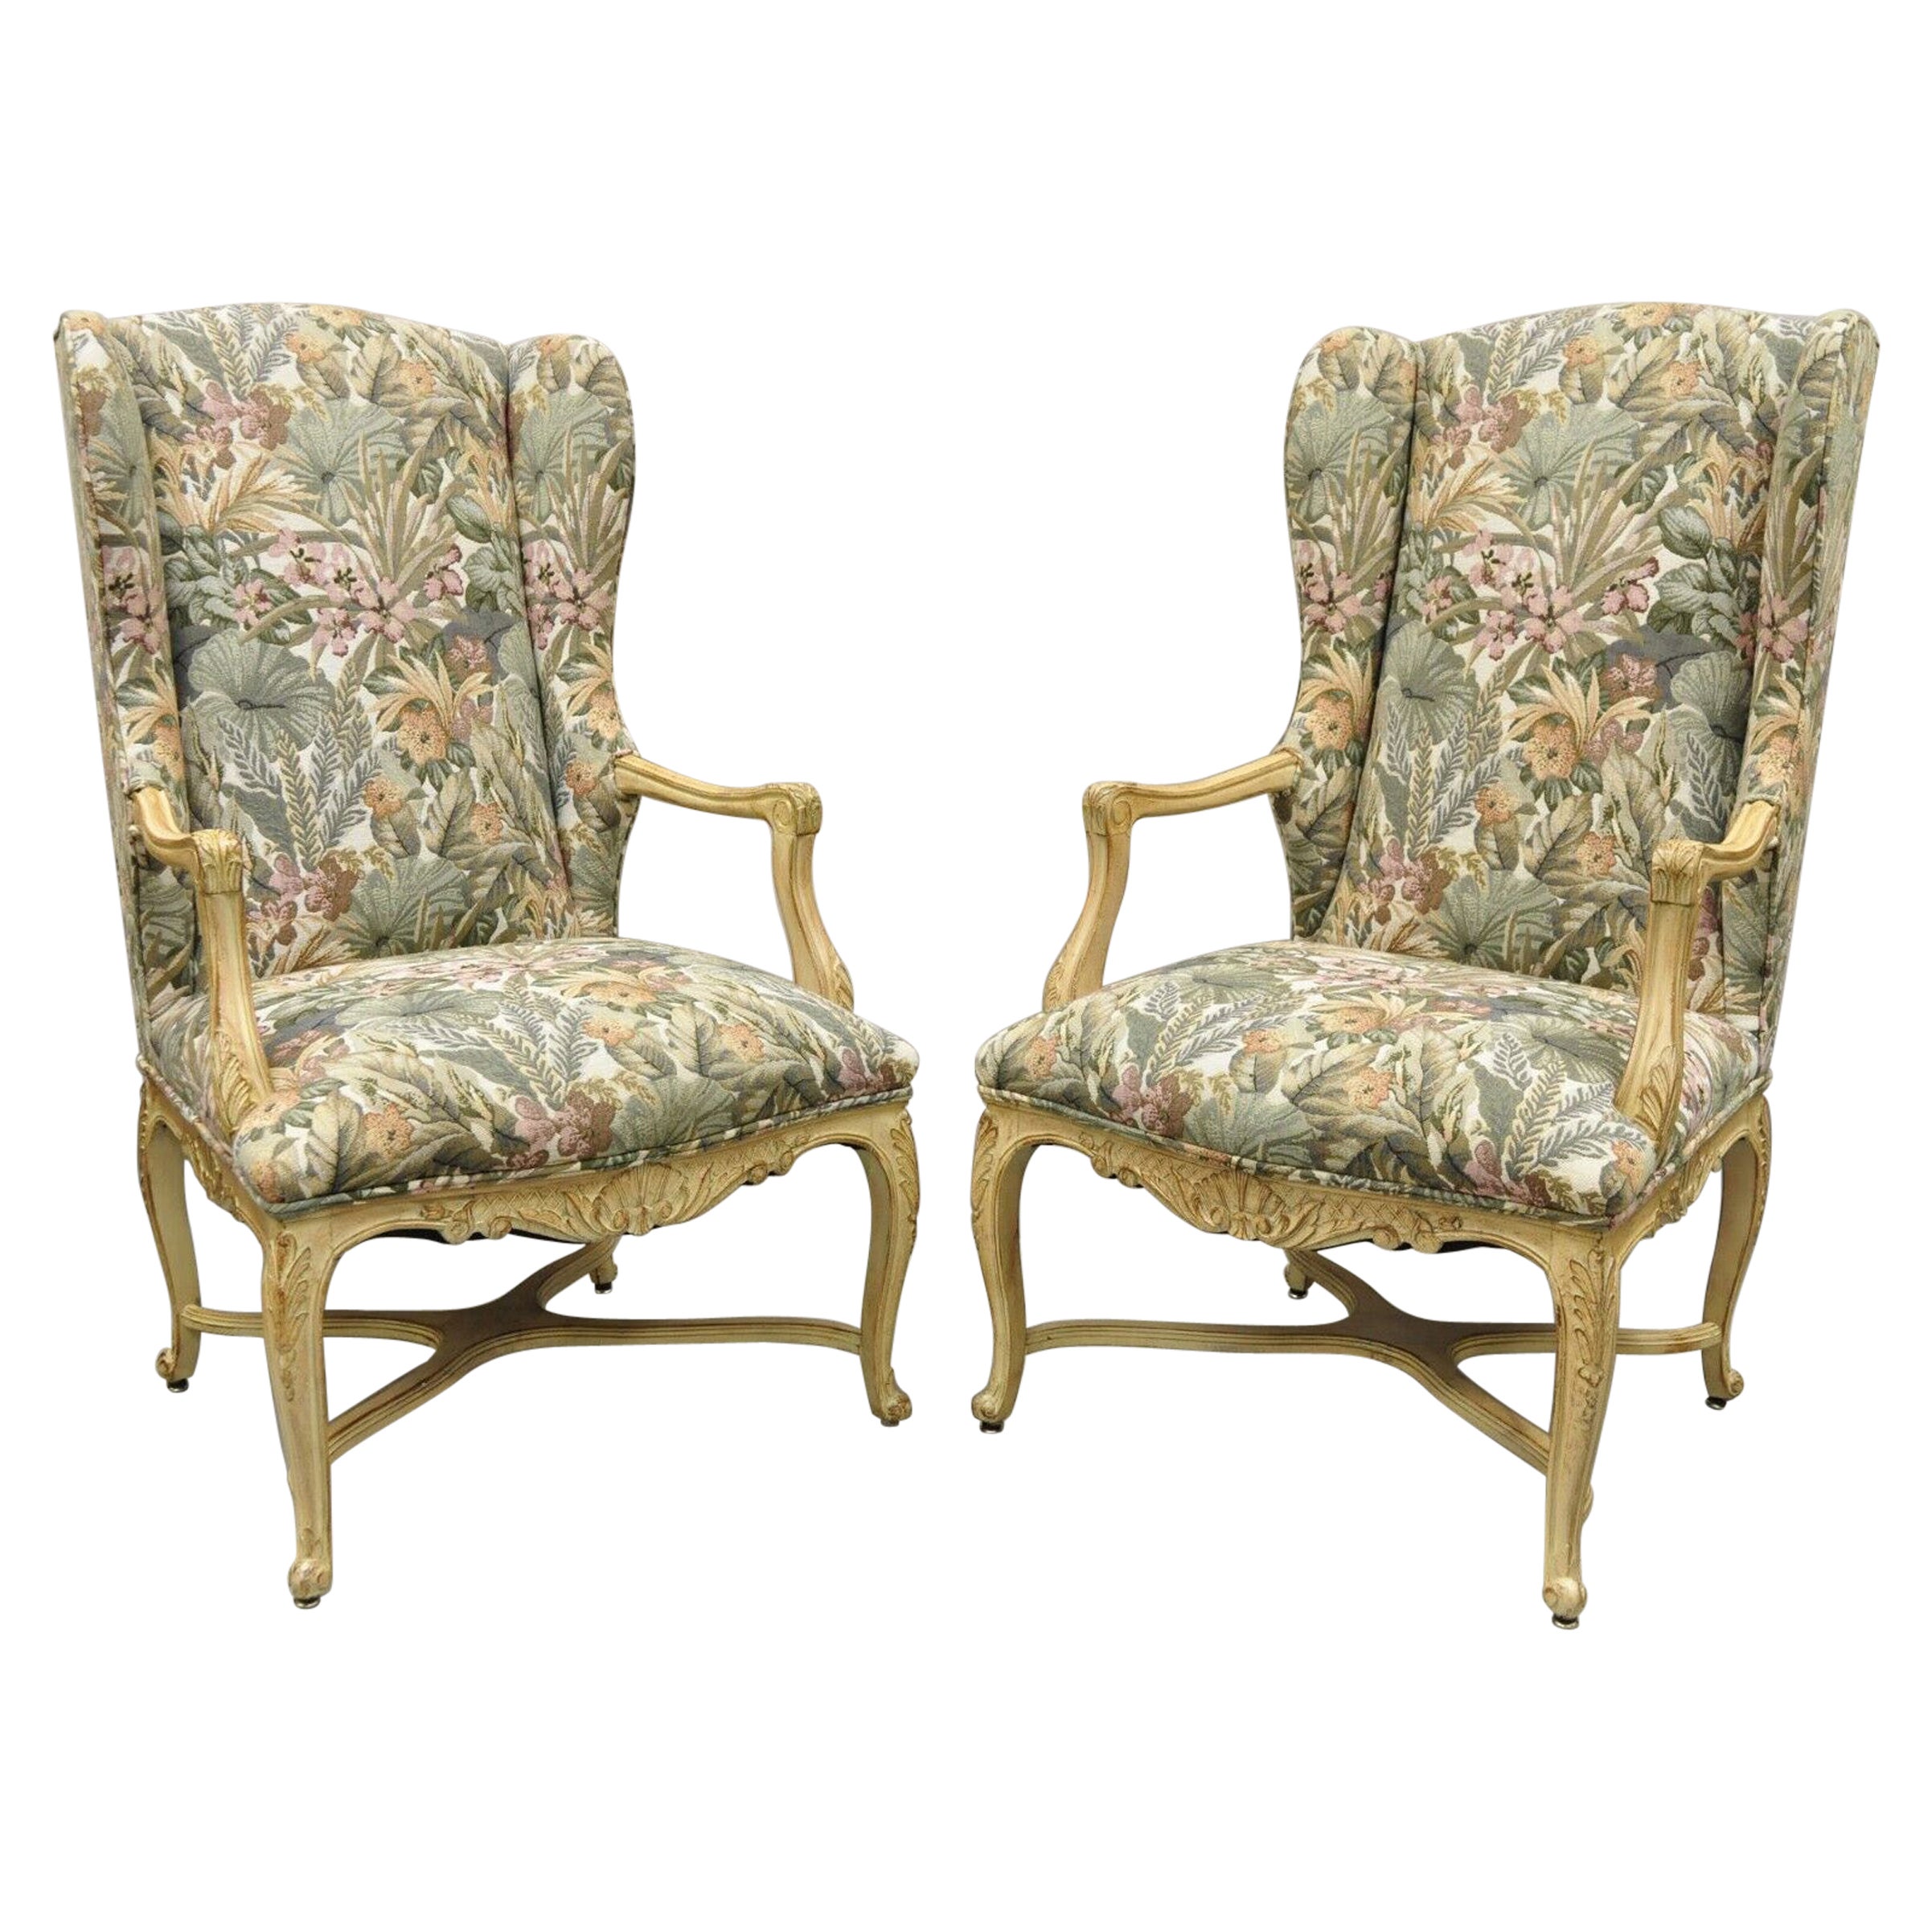 Paire de chaises longues provinciales françaises de style Louis XV rembourrées à l'arrière en vente